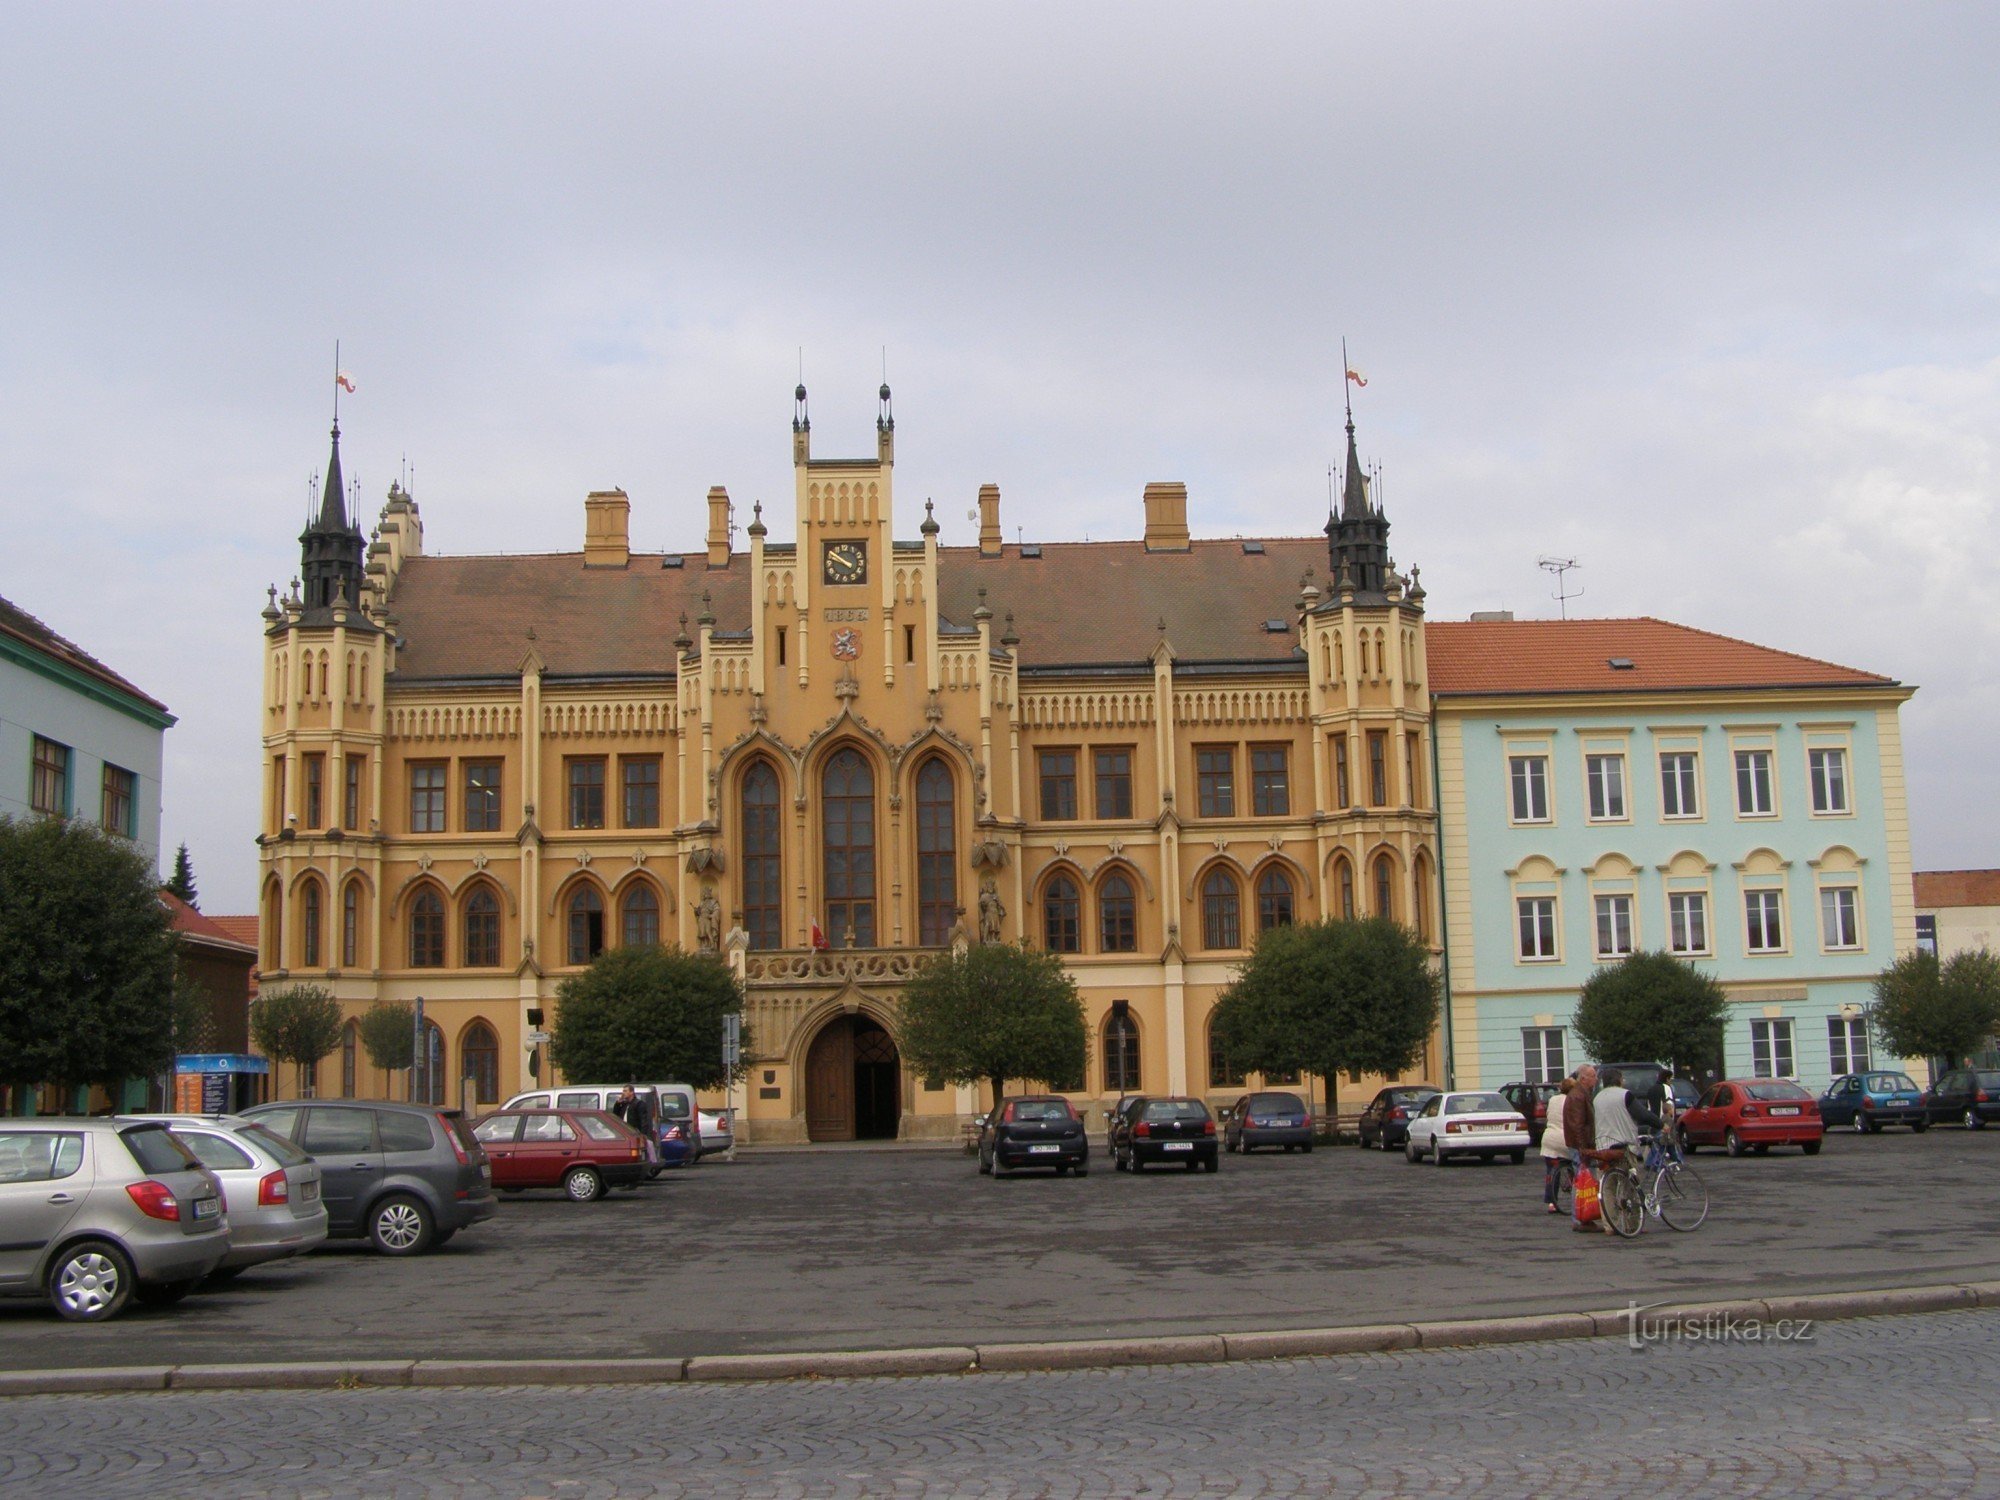 Nový Bydžov - town hall